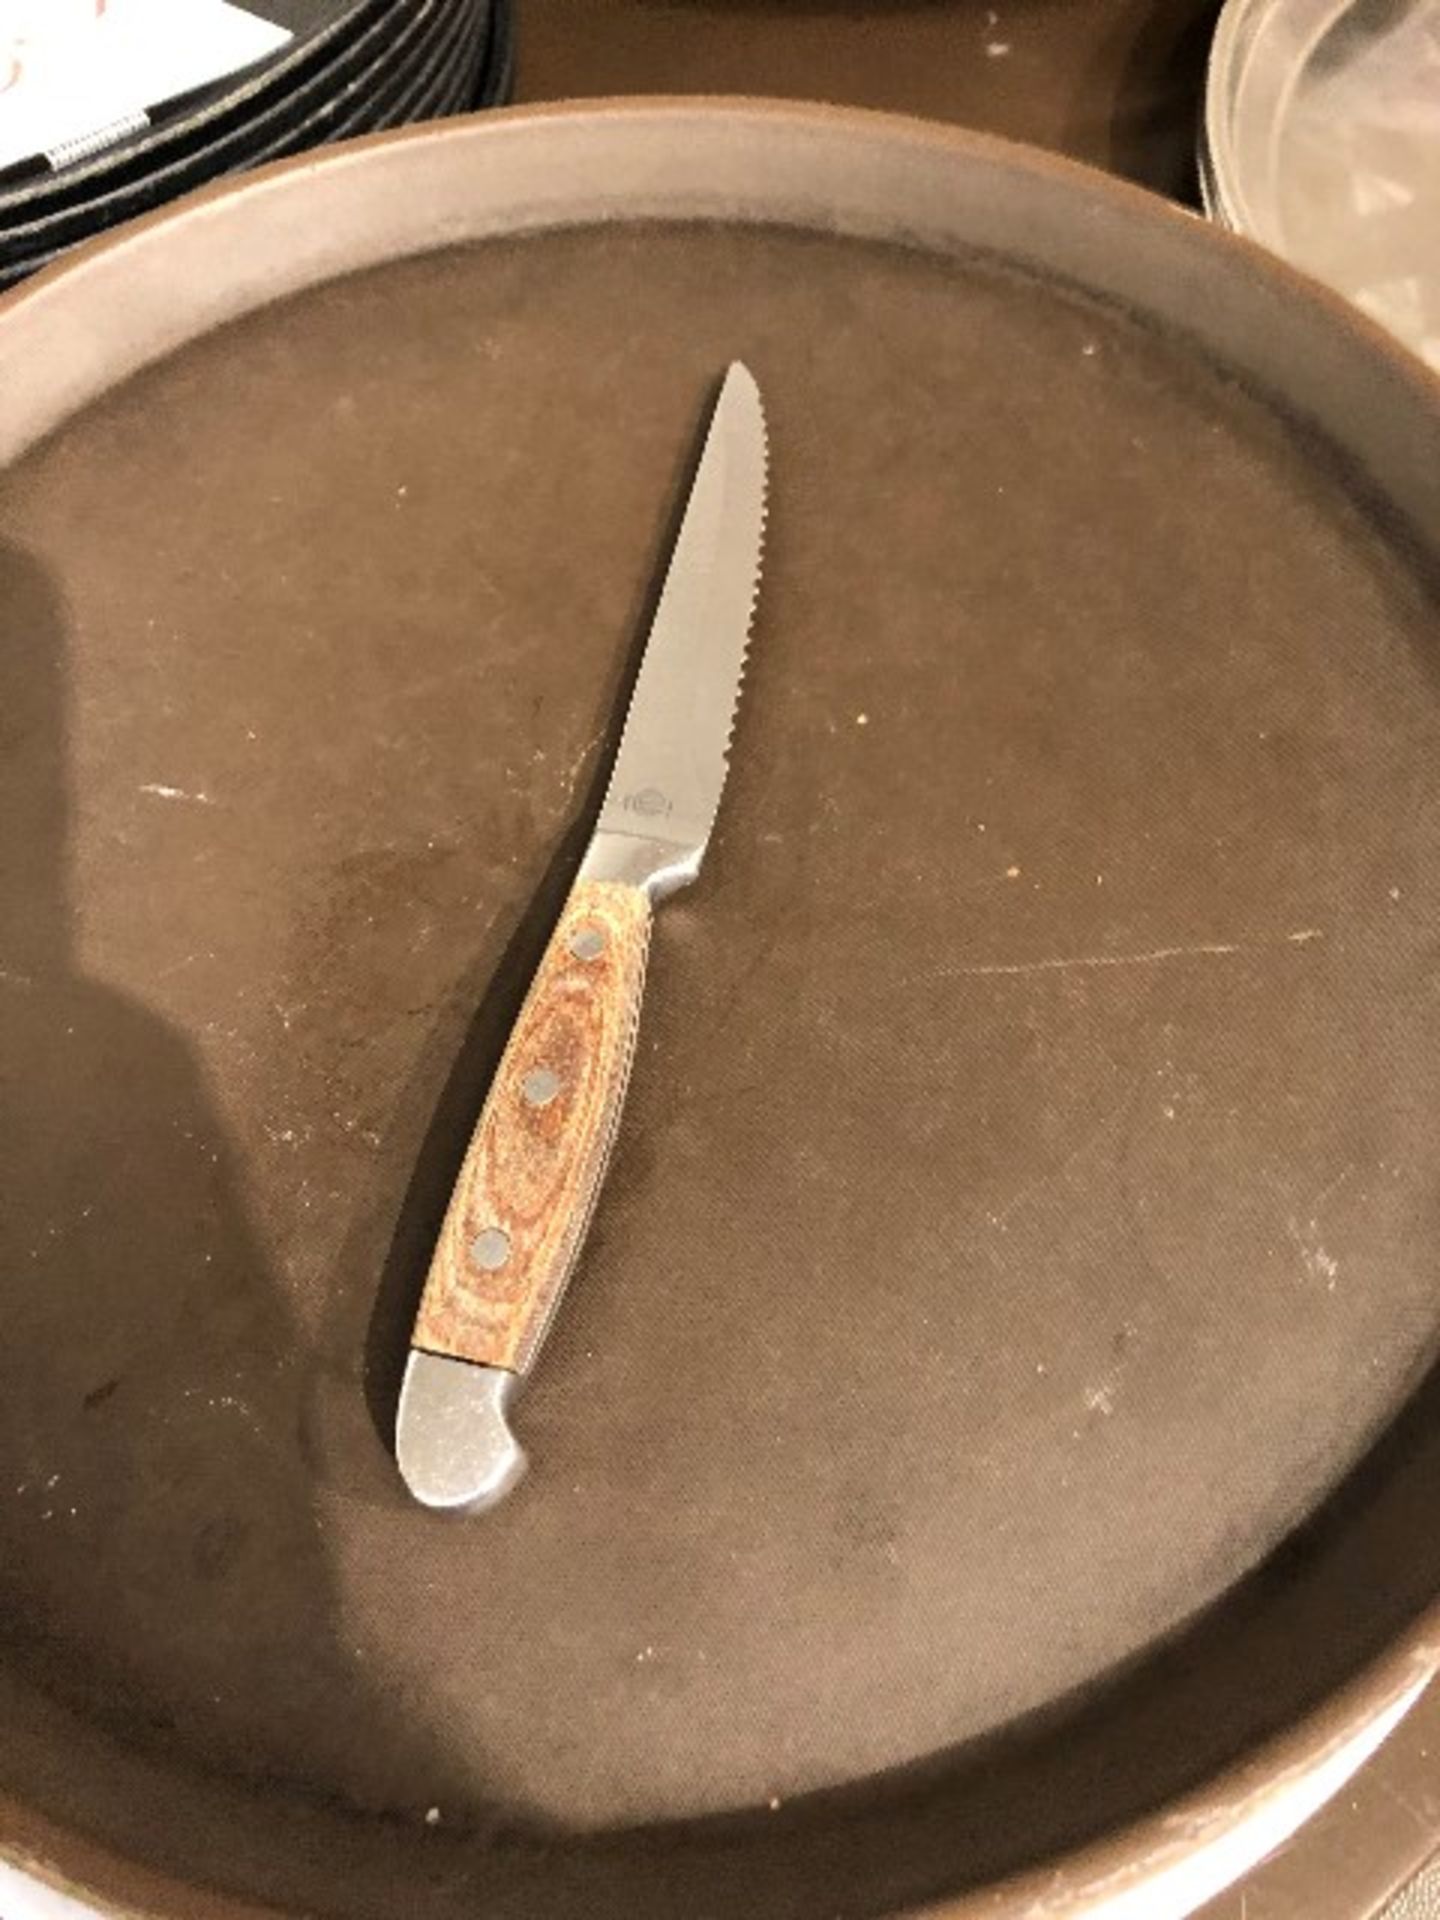 Steak knives, 62 pcs (Lot) - Image 2 of 2